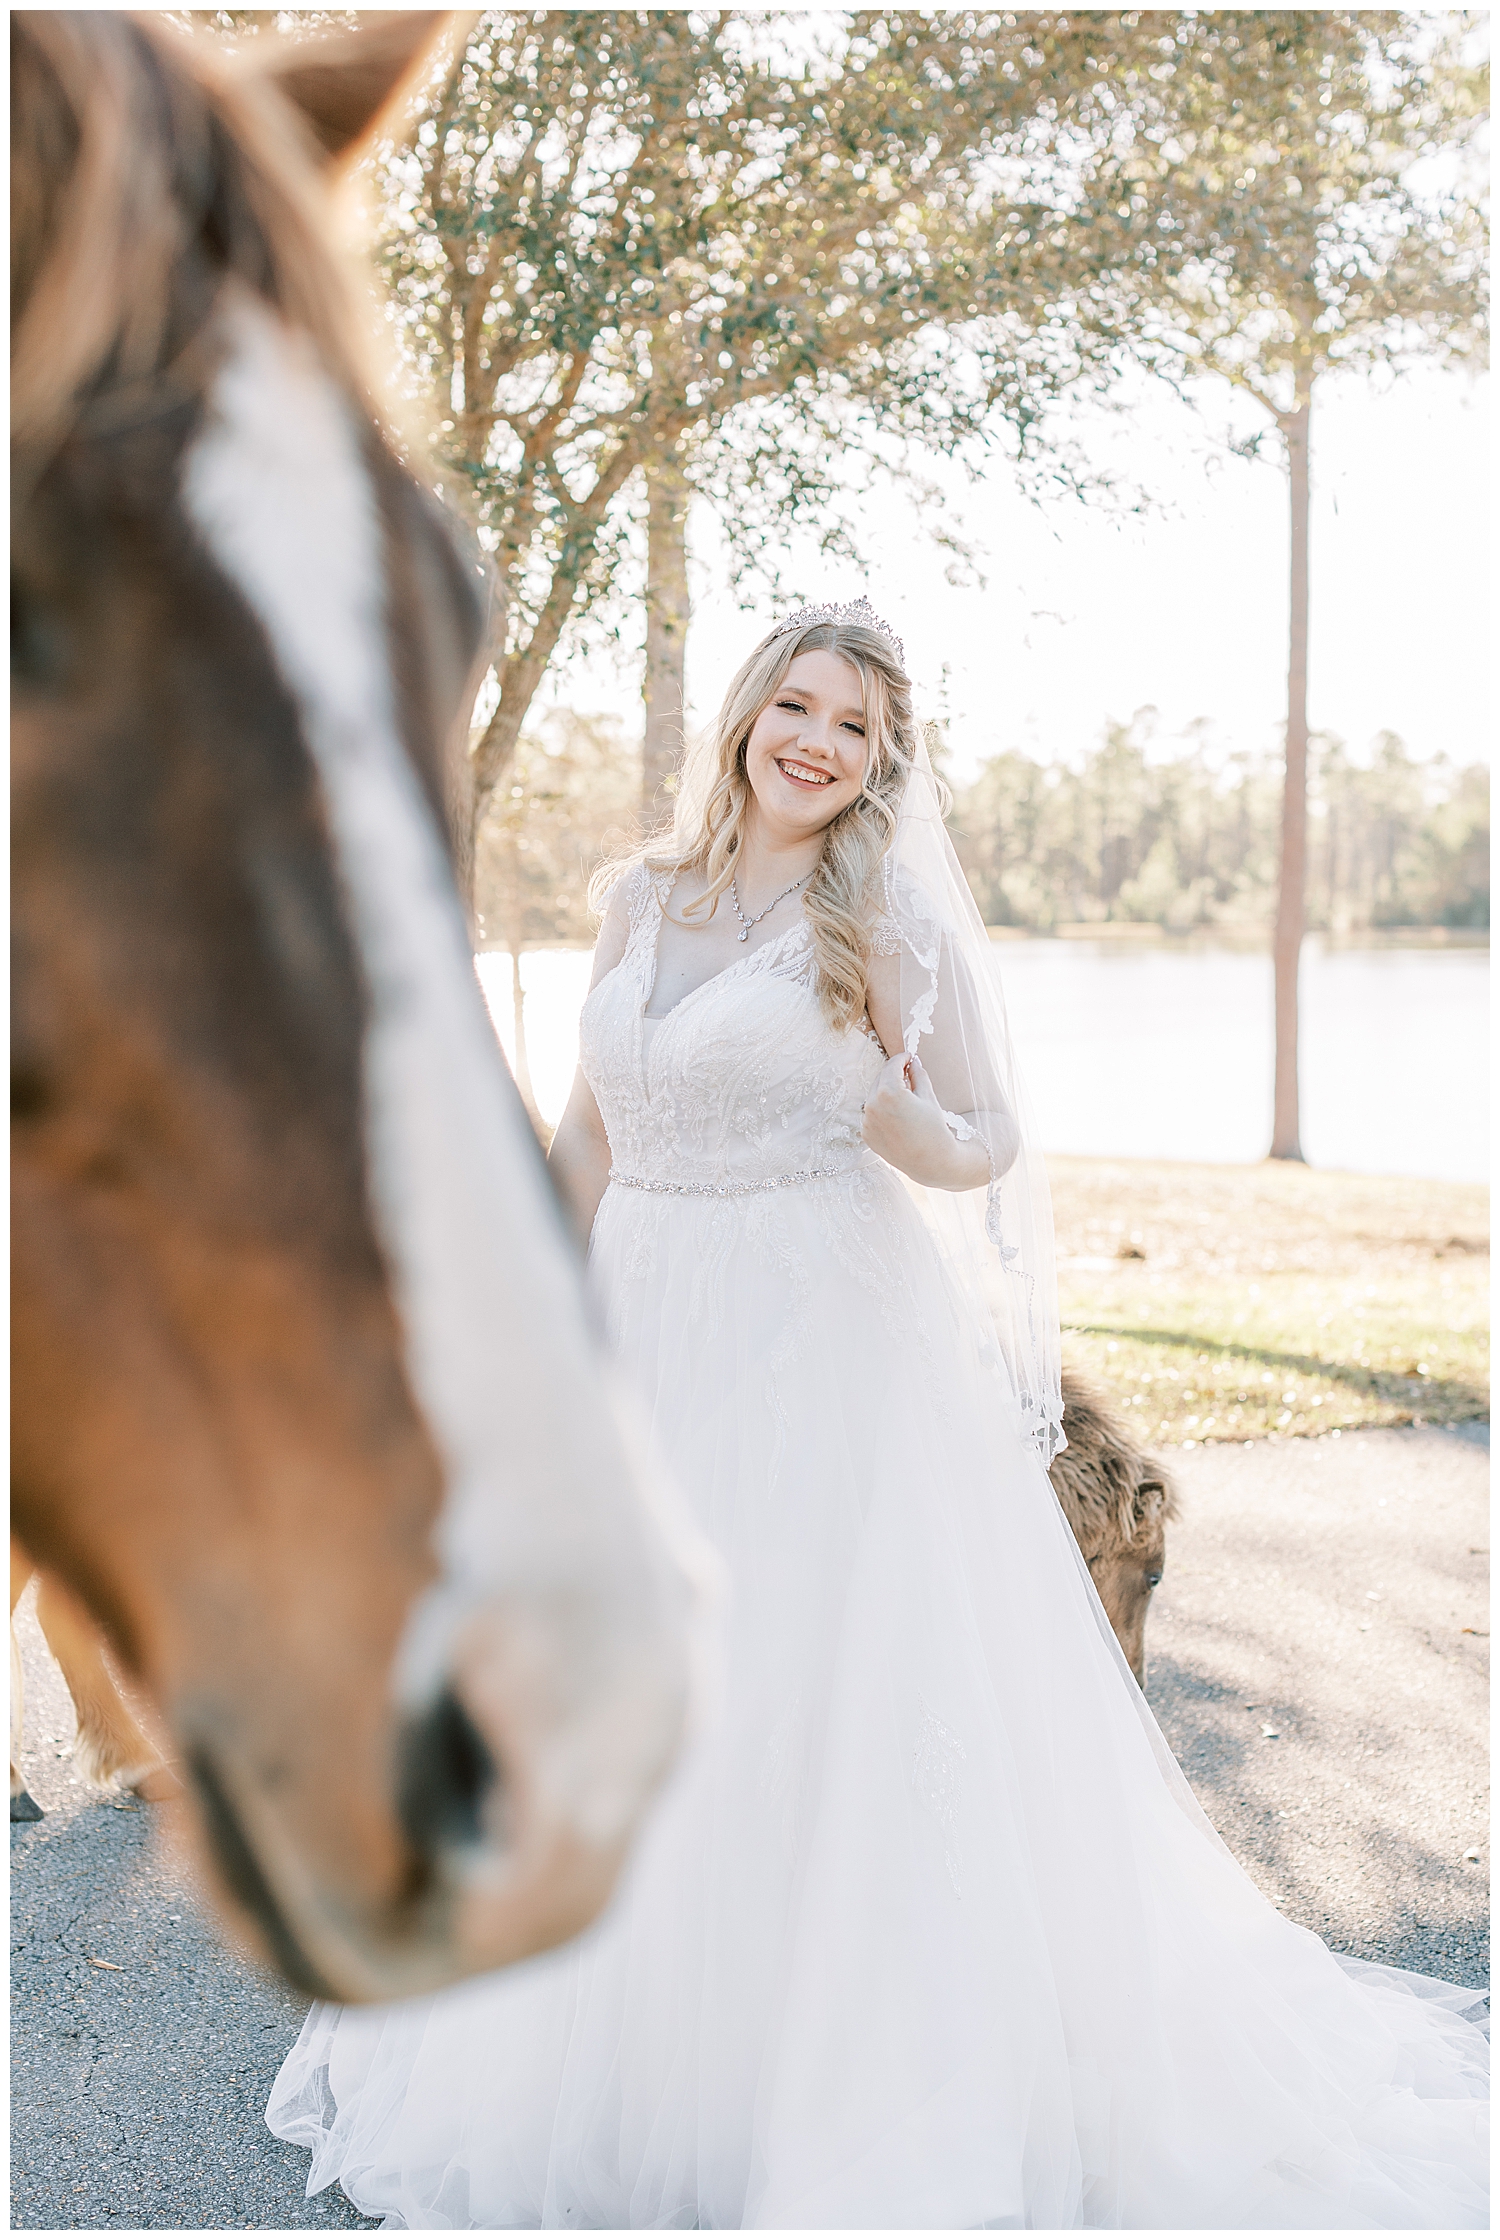 A bride smiles behind a horse.